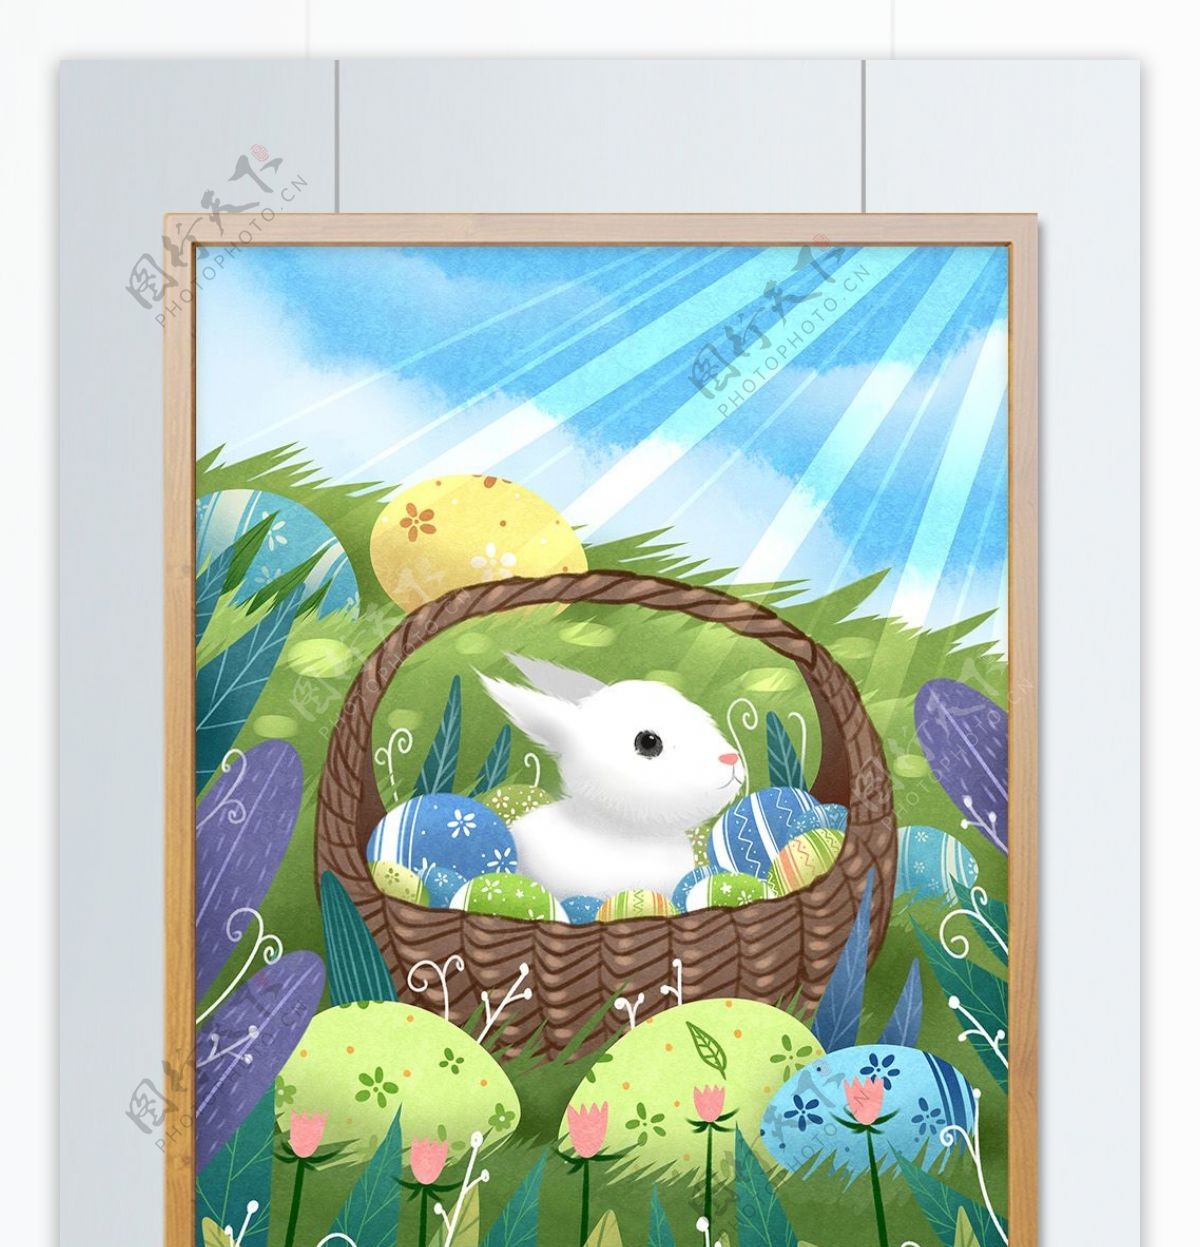 复活节彩蛋可爱兔子插画